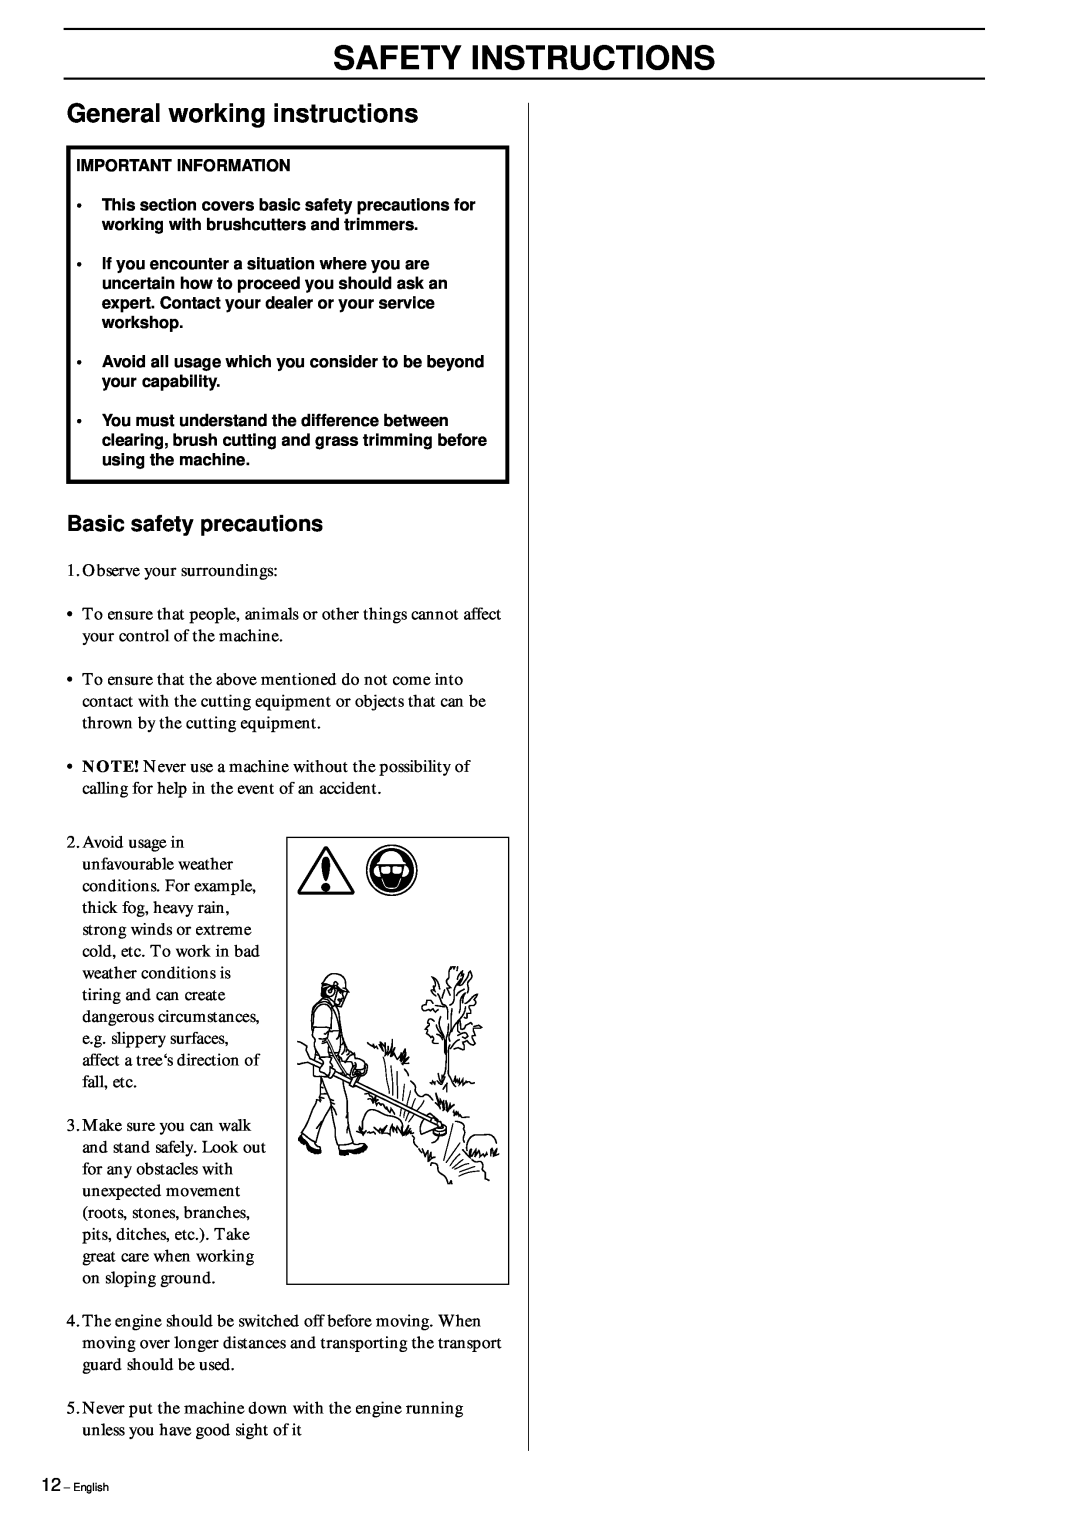 Husqvarna 326RX manual General working instructions, Safety Instructions, Basic safety precautions 